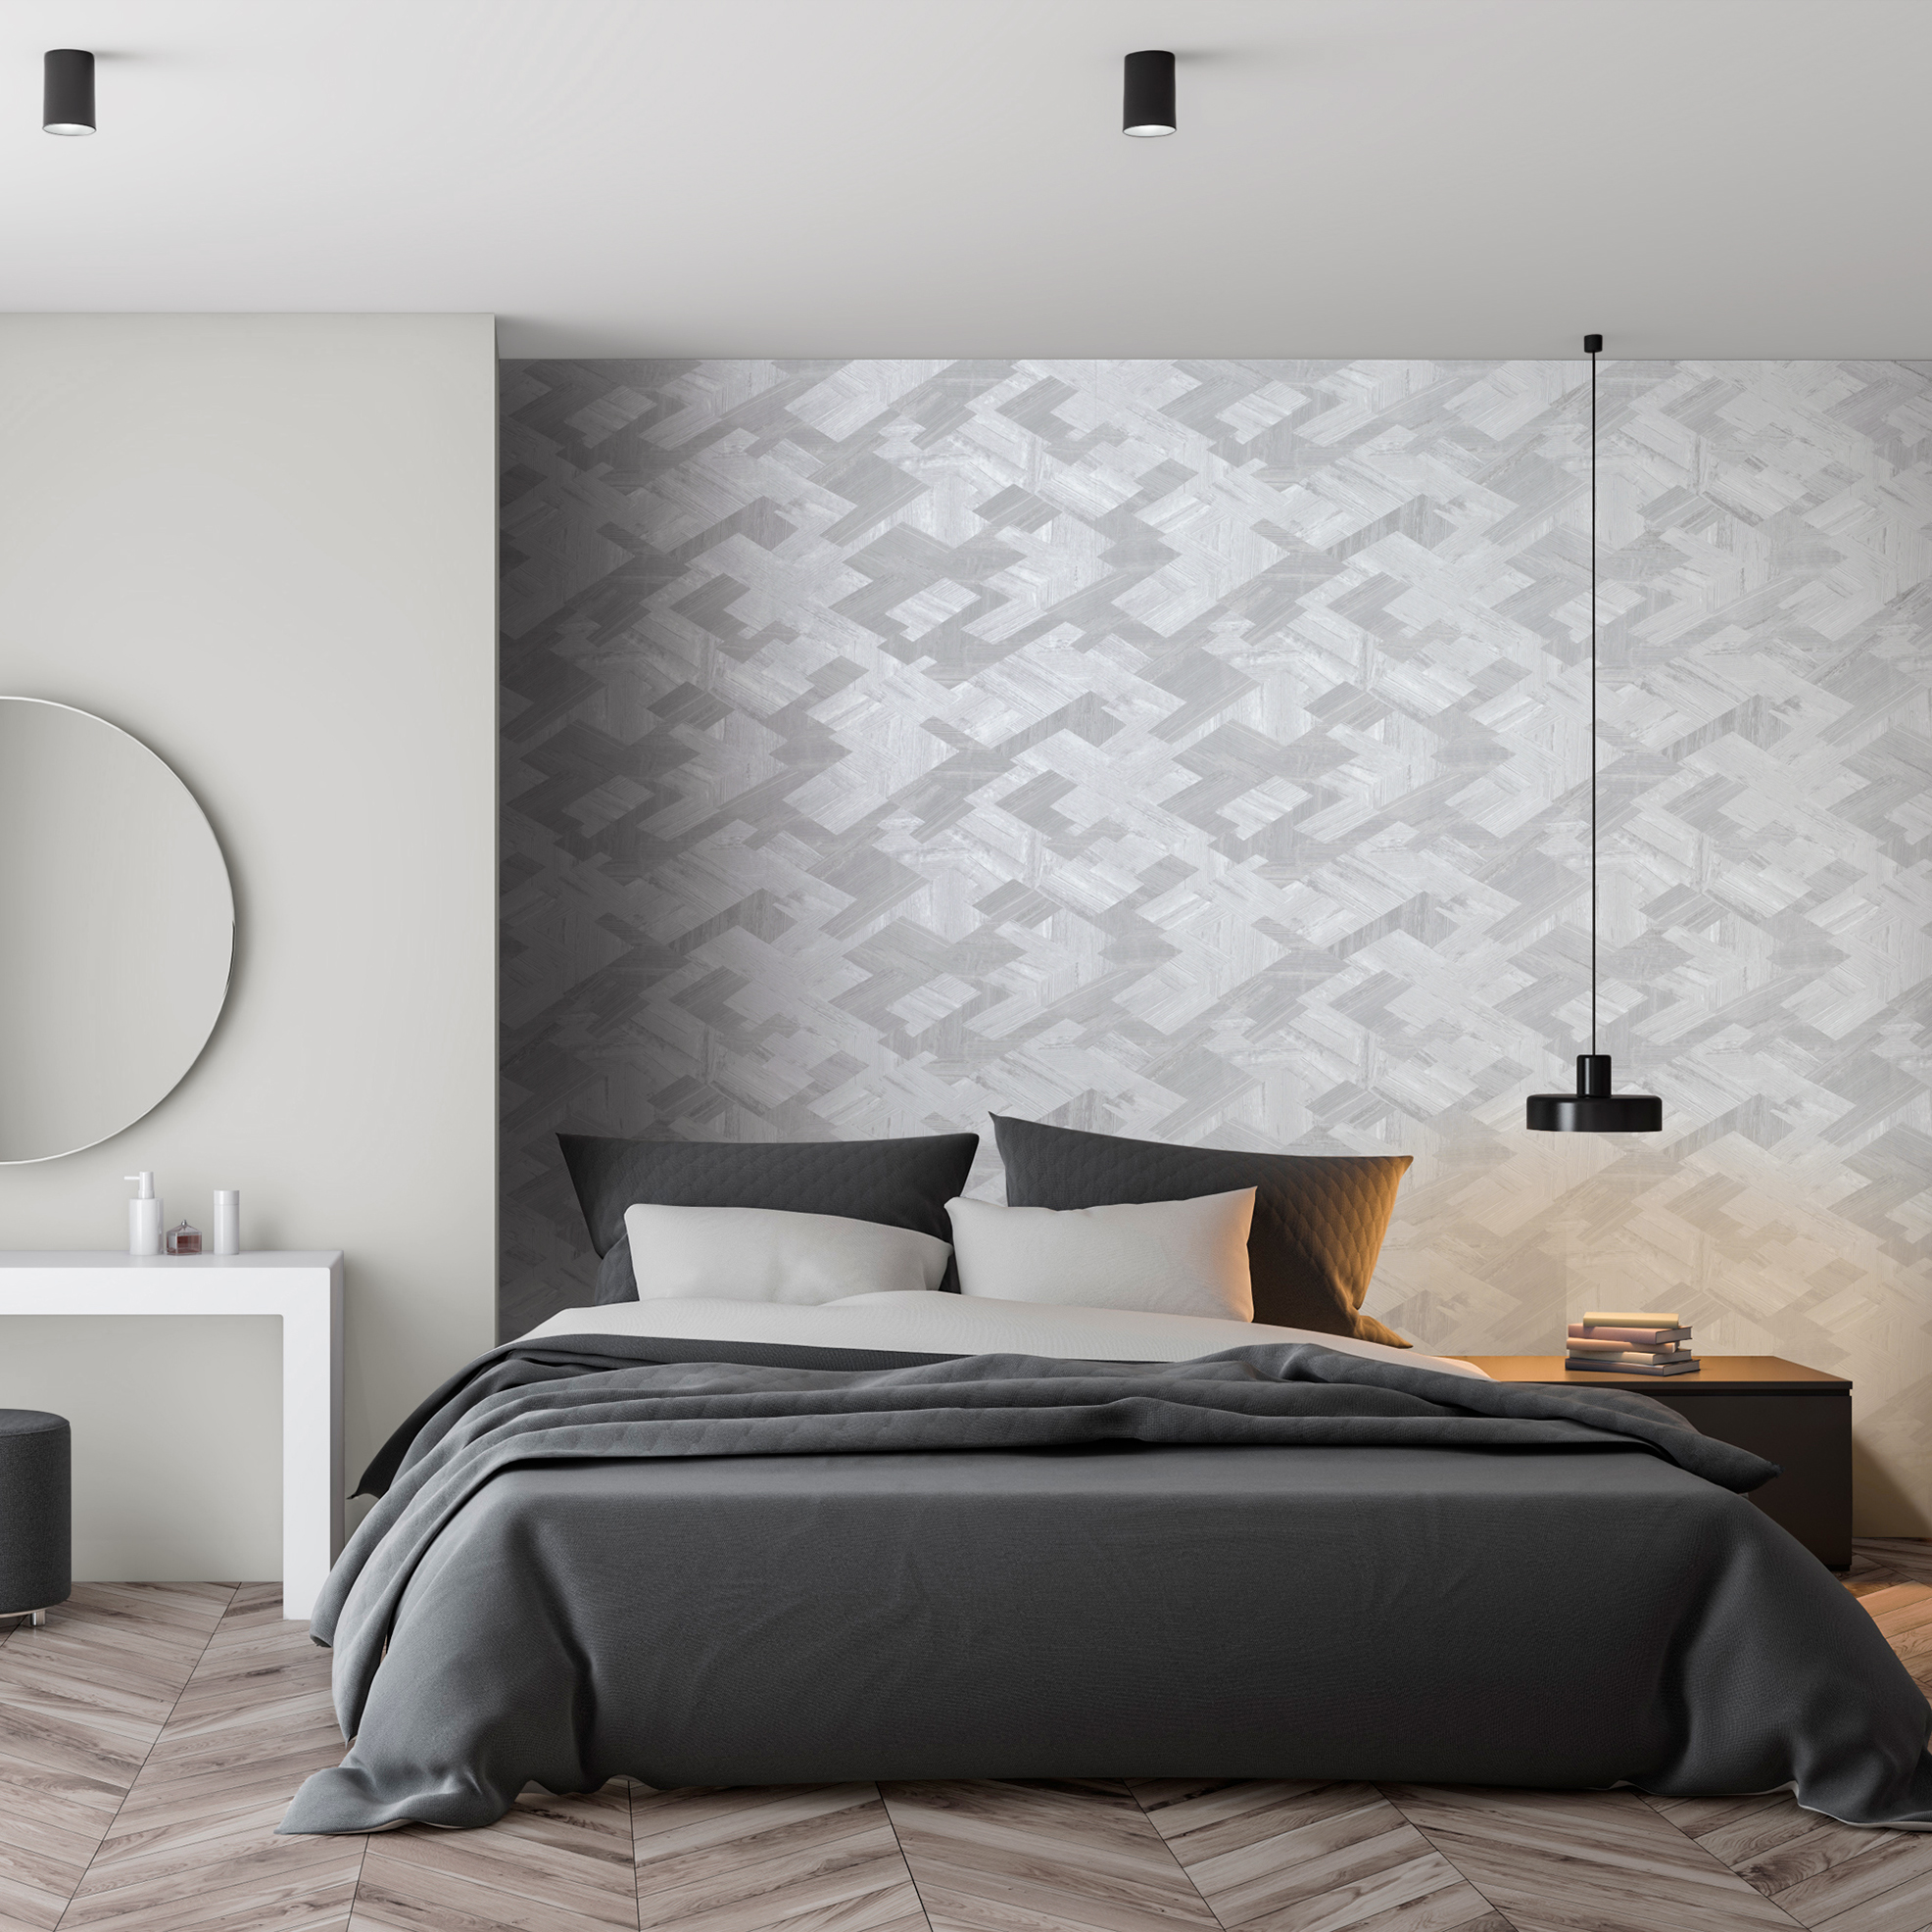 Erschaffen sie ein geusndes Ambiente in ihren Schlafzimmer mit den Grau-Silbernen Vliestapeten von Hohenberger in großem Format